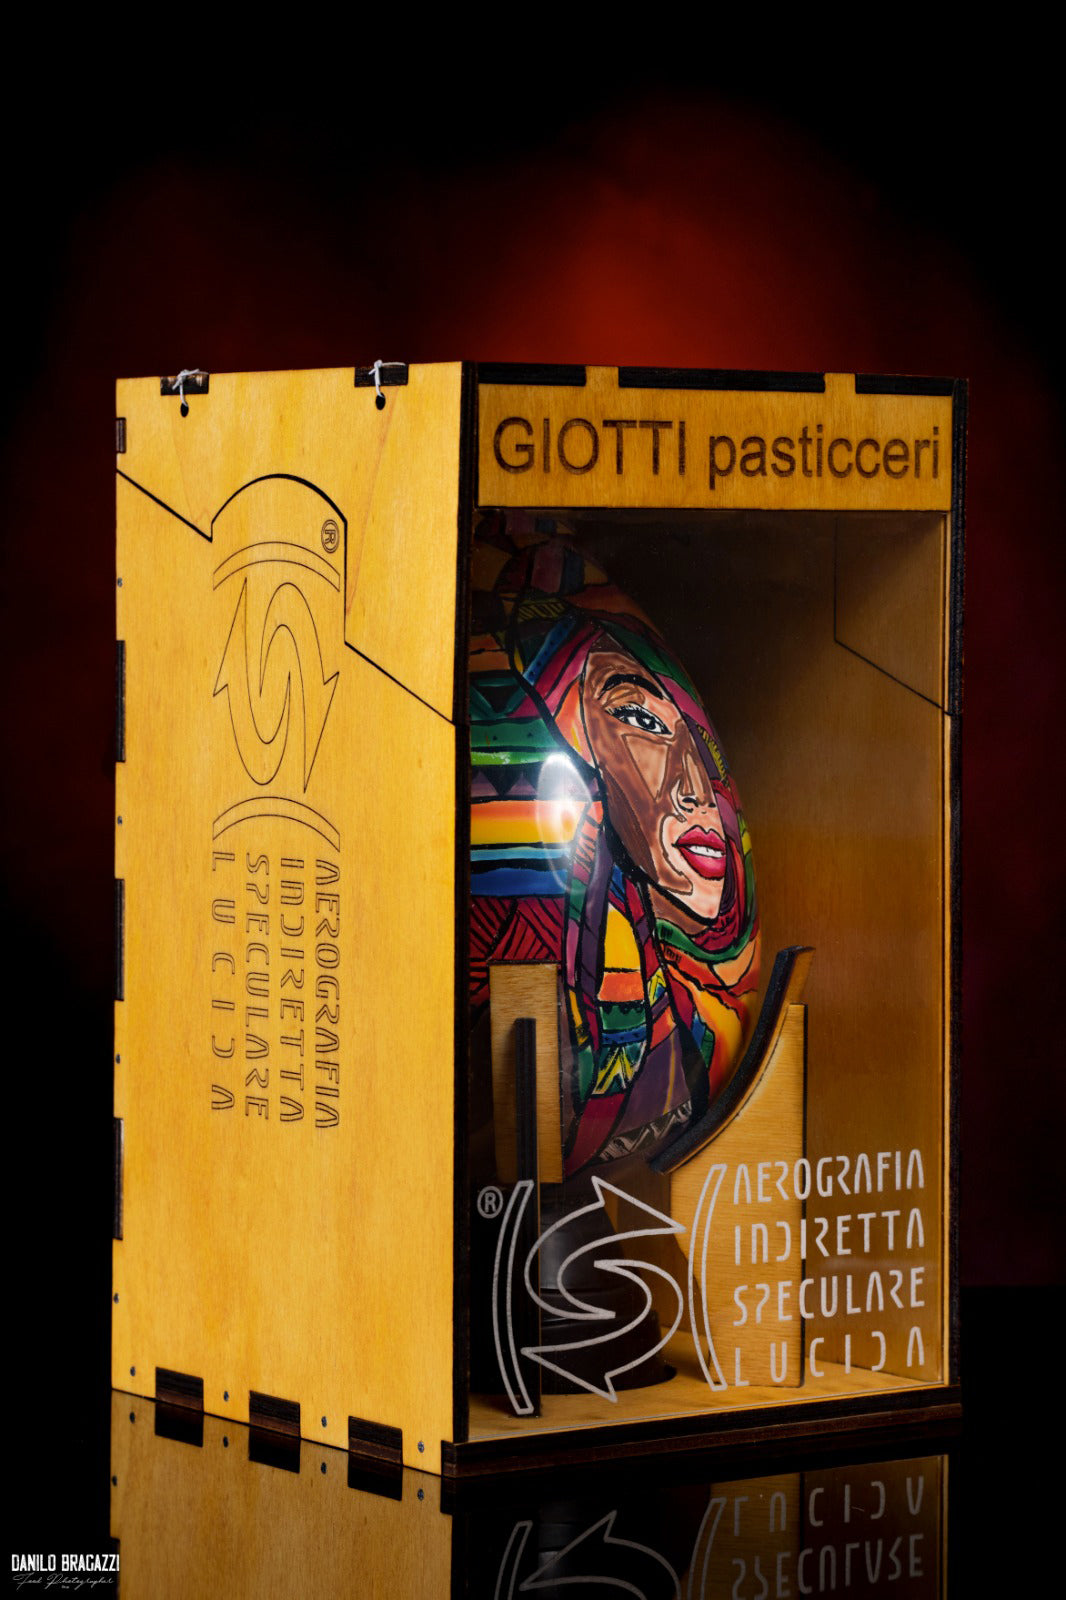 Cofanetto in legno per accompagnare le preziose uova aerografate del Maestro Nicola Giotti